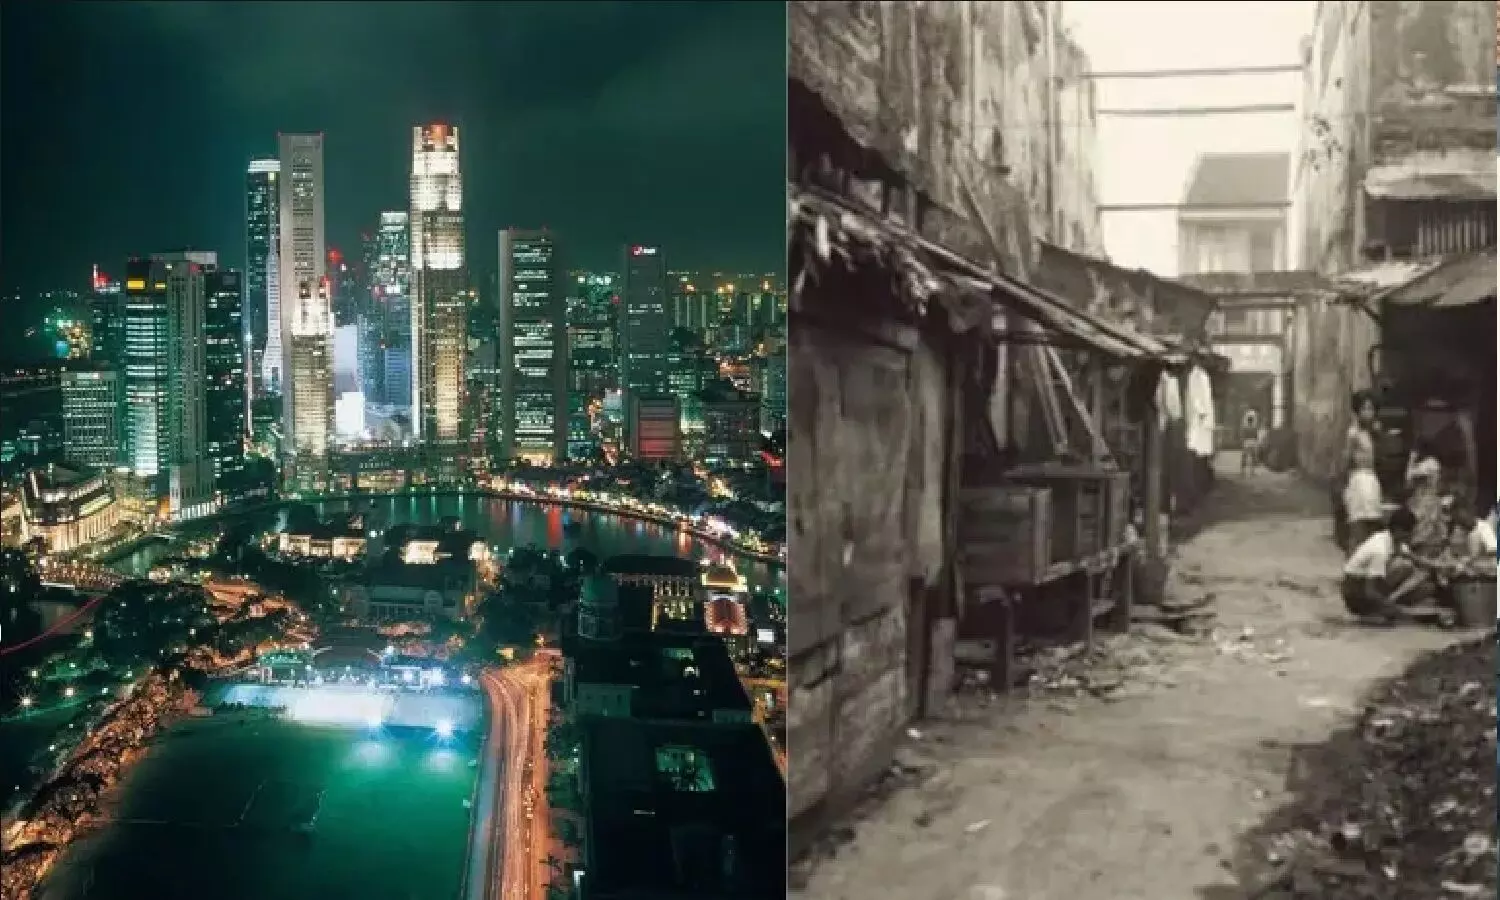 सिंगापुर अमीर कैसे बना: कभी यहां सिर्फ गरीबी, भुखमरी और हर तरफ सिर्फ झोपड़ियां दिखाई देती थीं